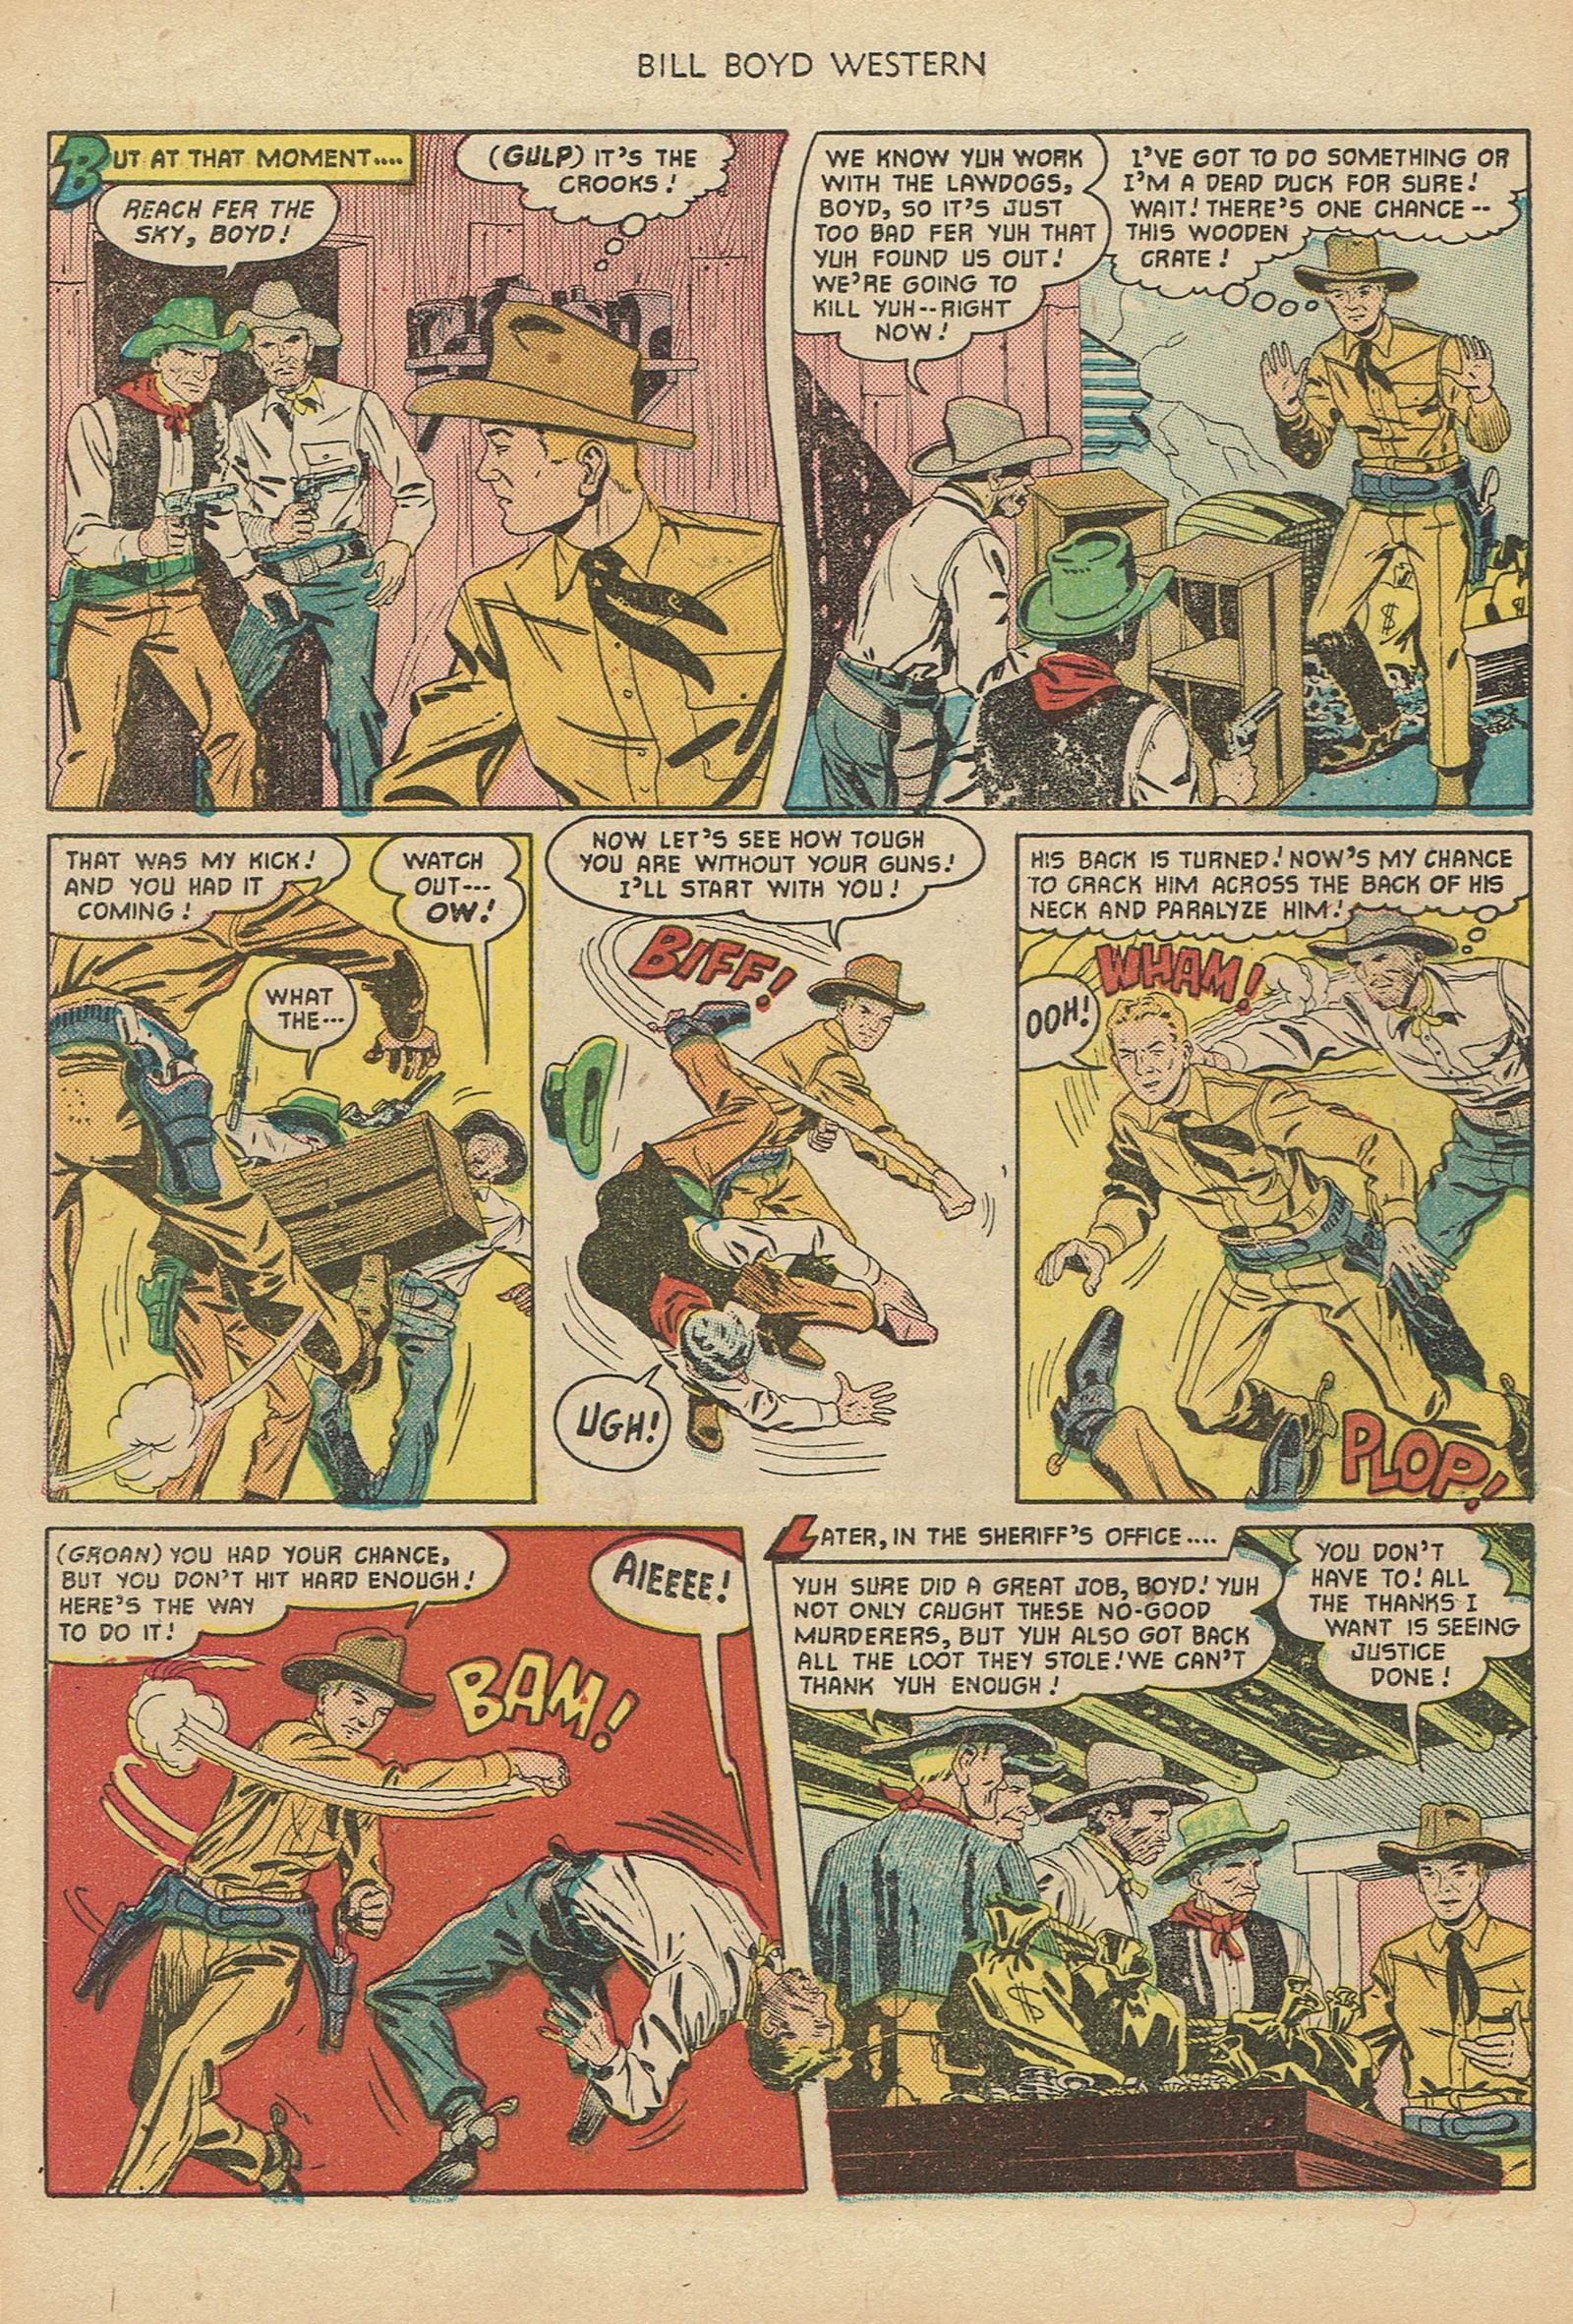 Read online Bill Boyd Western comic -  Issue #18 - 22